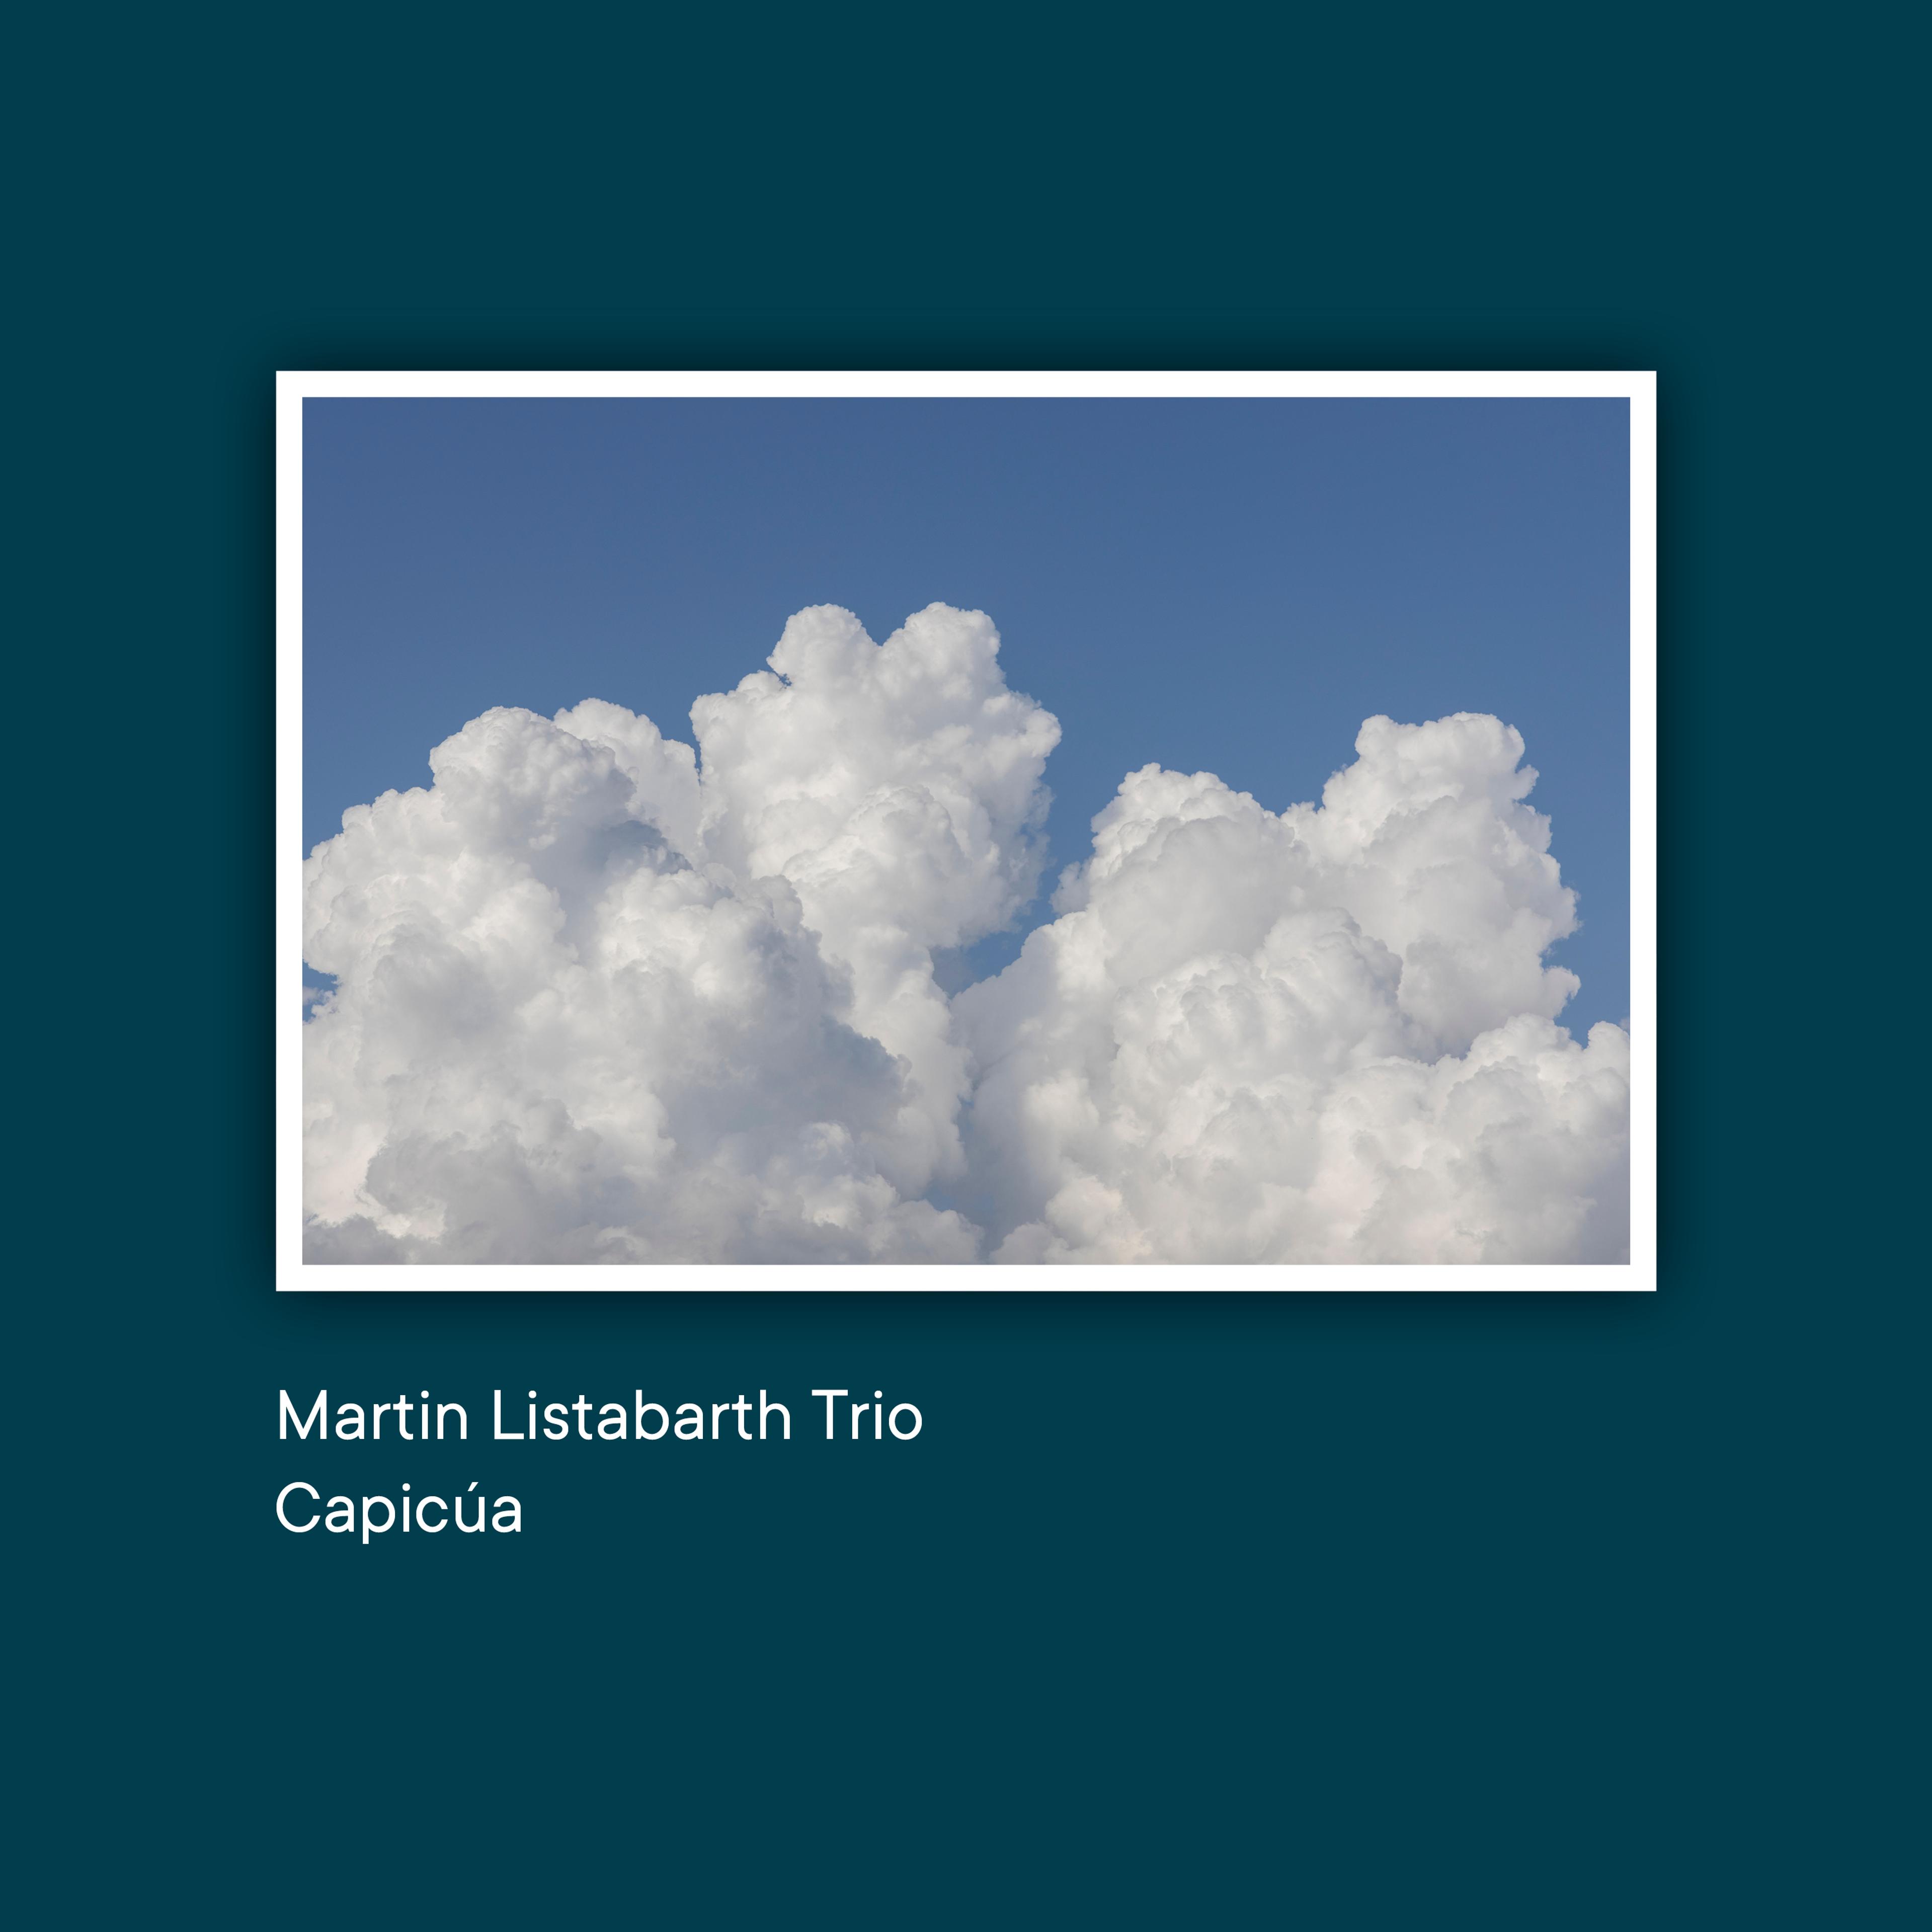 Auf dem Album-Cover zur Single "Capicúa" des Martin Listabarth Trios ist eine Postkarte zu sehen, die weiße Wolken vor einem blauen Himmel zeigen. 